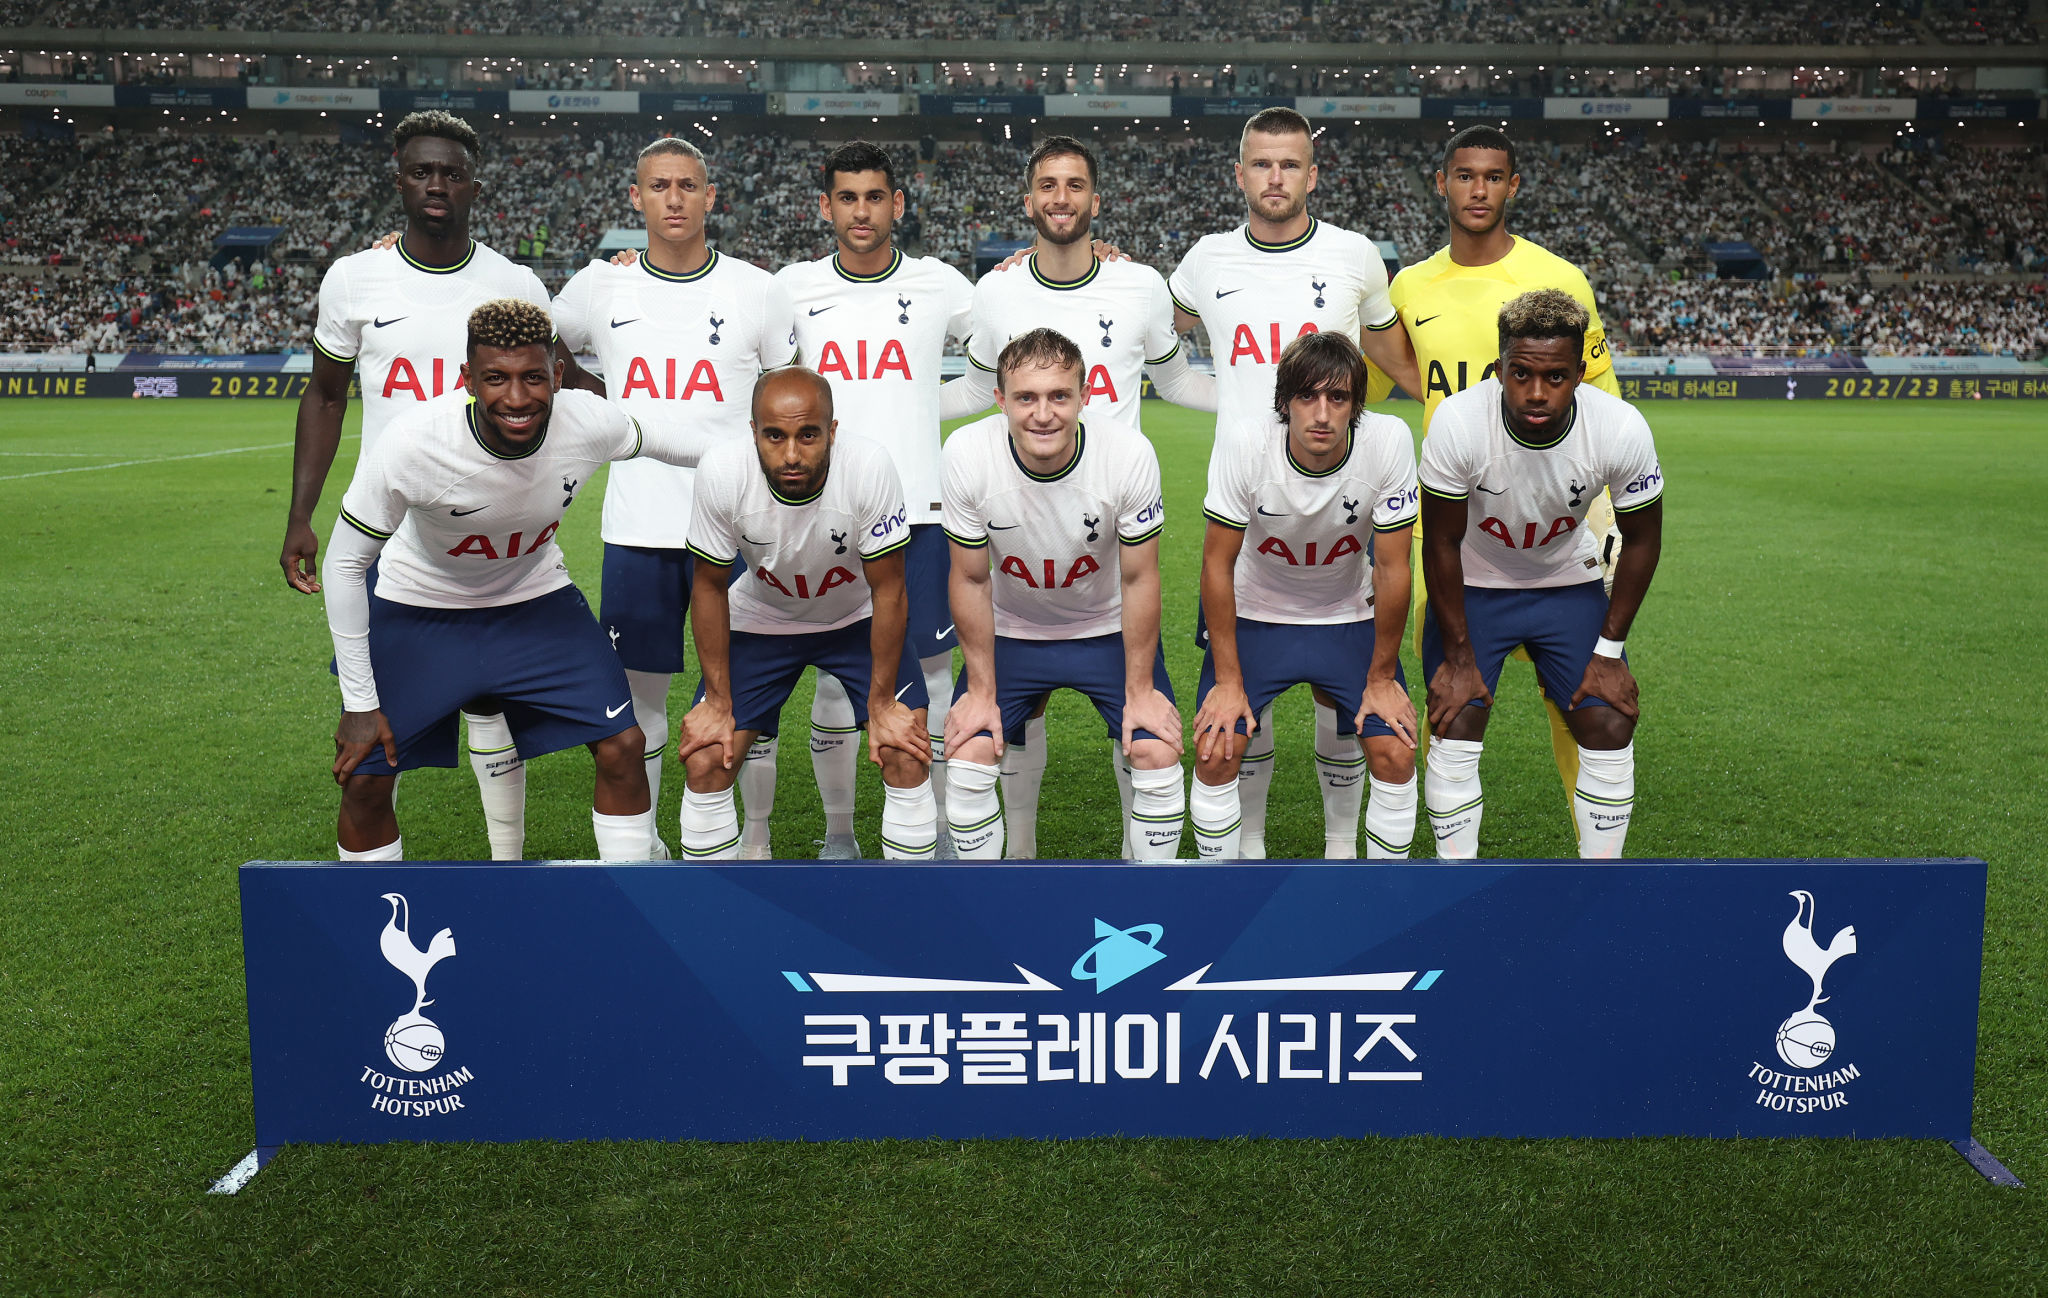 Pre-Season Friendlies Highlights 2022: Tottenham Hotspur beat Team K-League 6-3 in first Pre-Season friendly, Heung-min Son scores a brace, Check Spurs beat K League HIGHLIGHTS